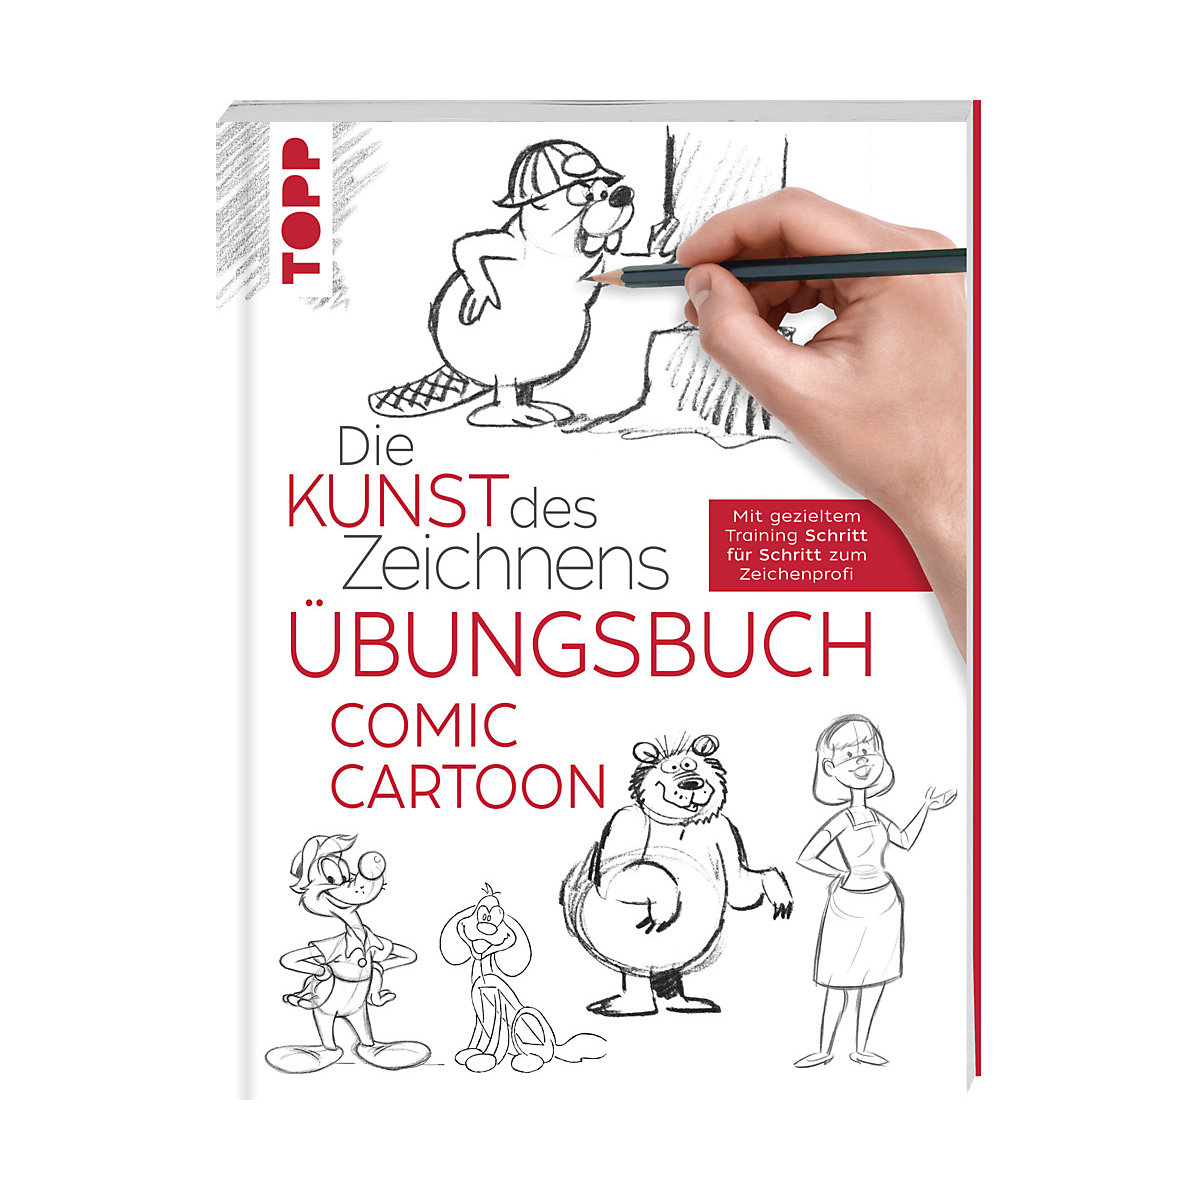 Die Kunst des Zeichnens Comic Cartoon Übungsbuch